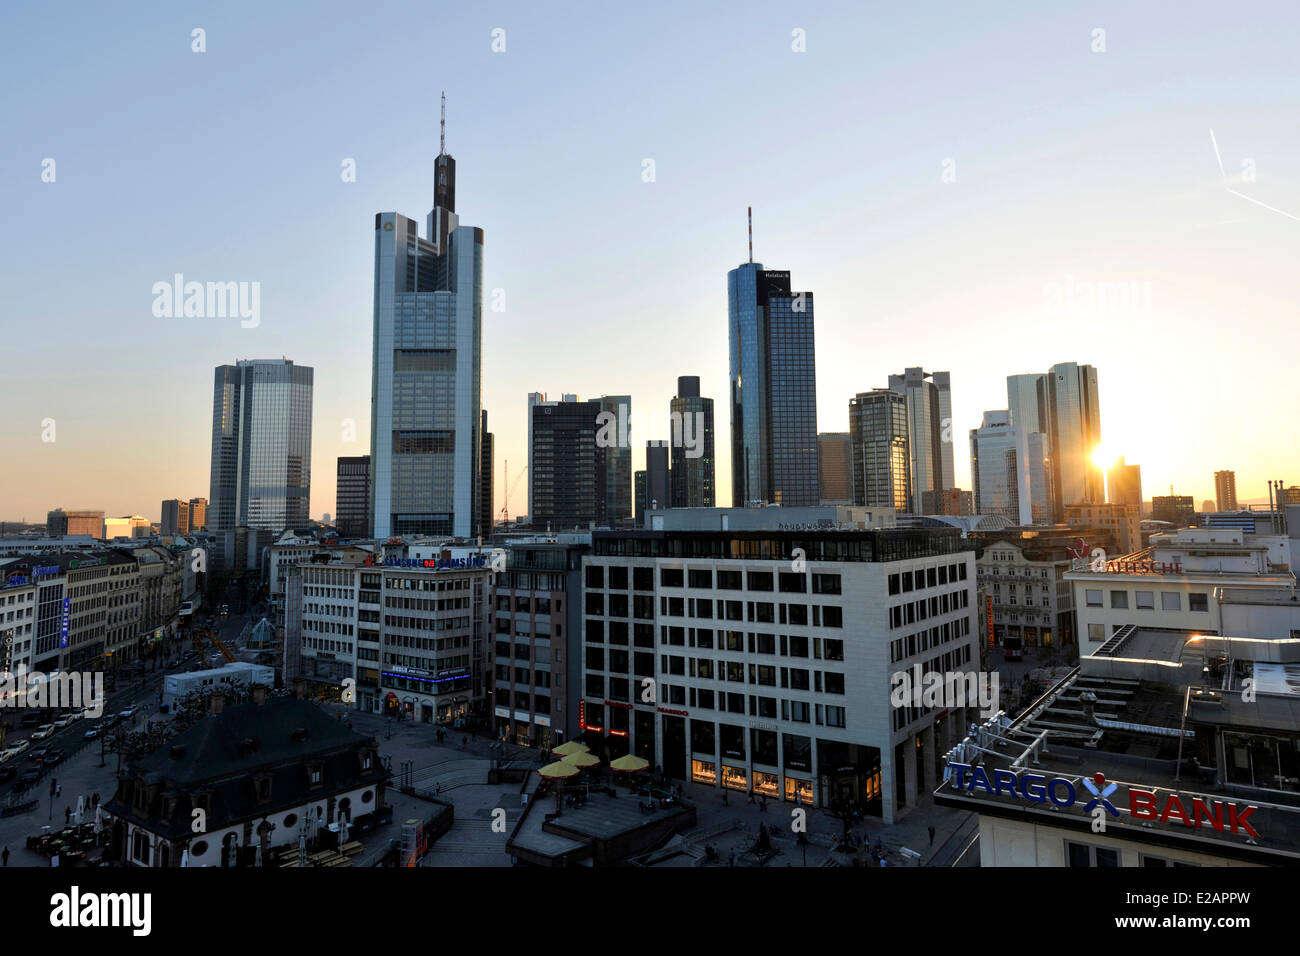 Allemagne, Hesse, Frankfurt am Main, Hauptwache, l'horizon avec des gratte-ciel Banque D'Images